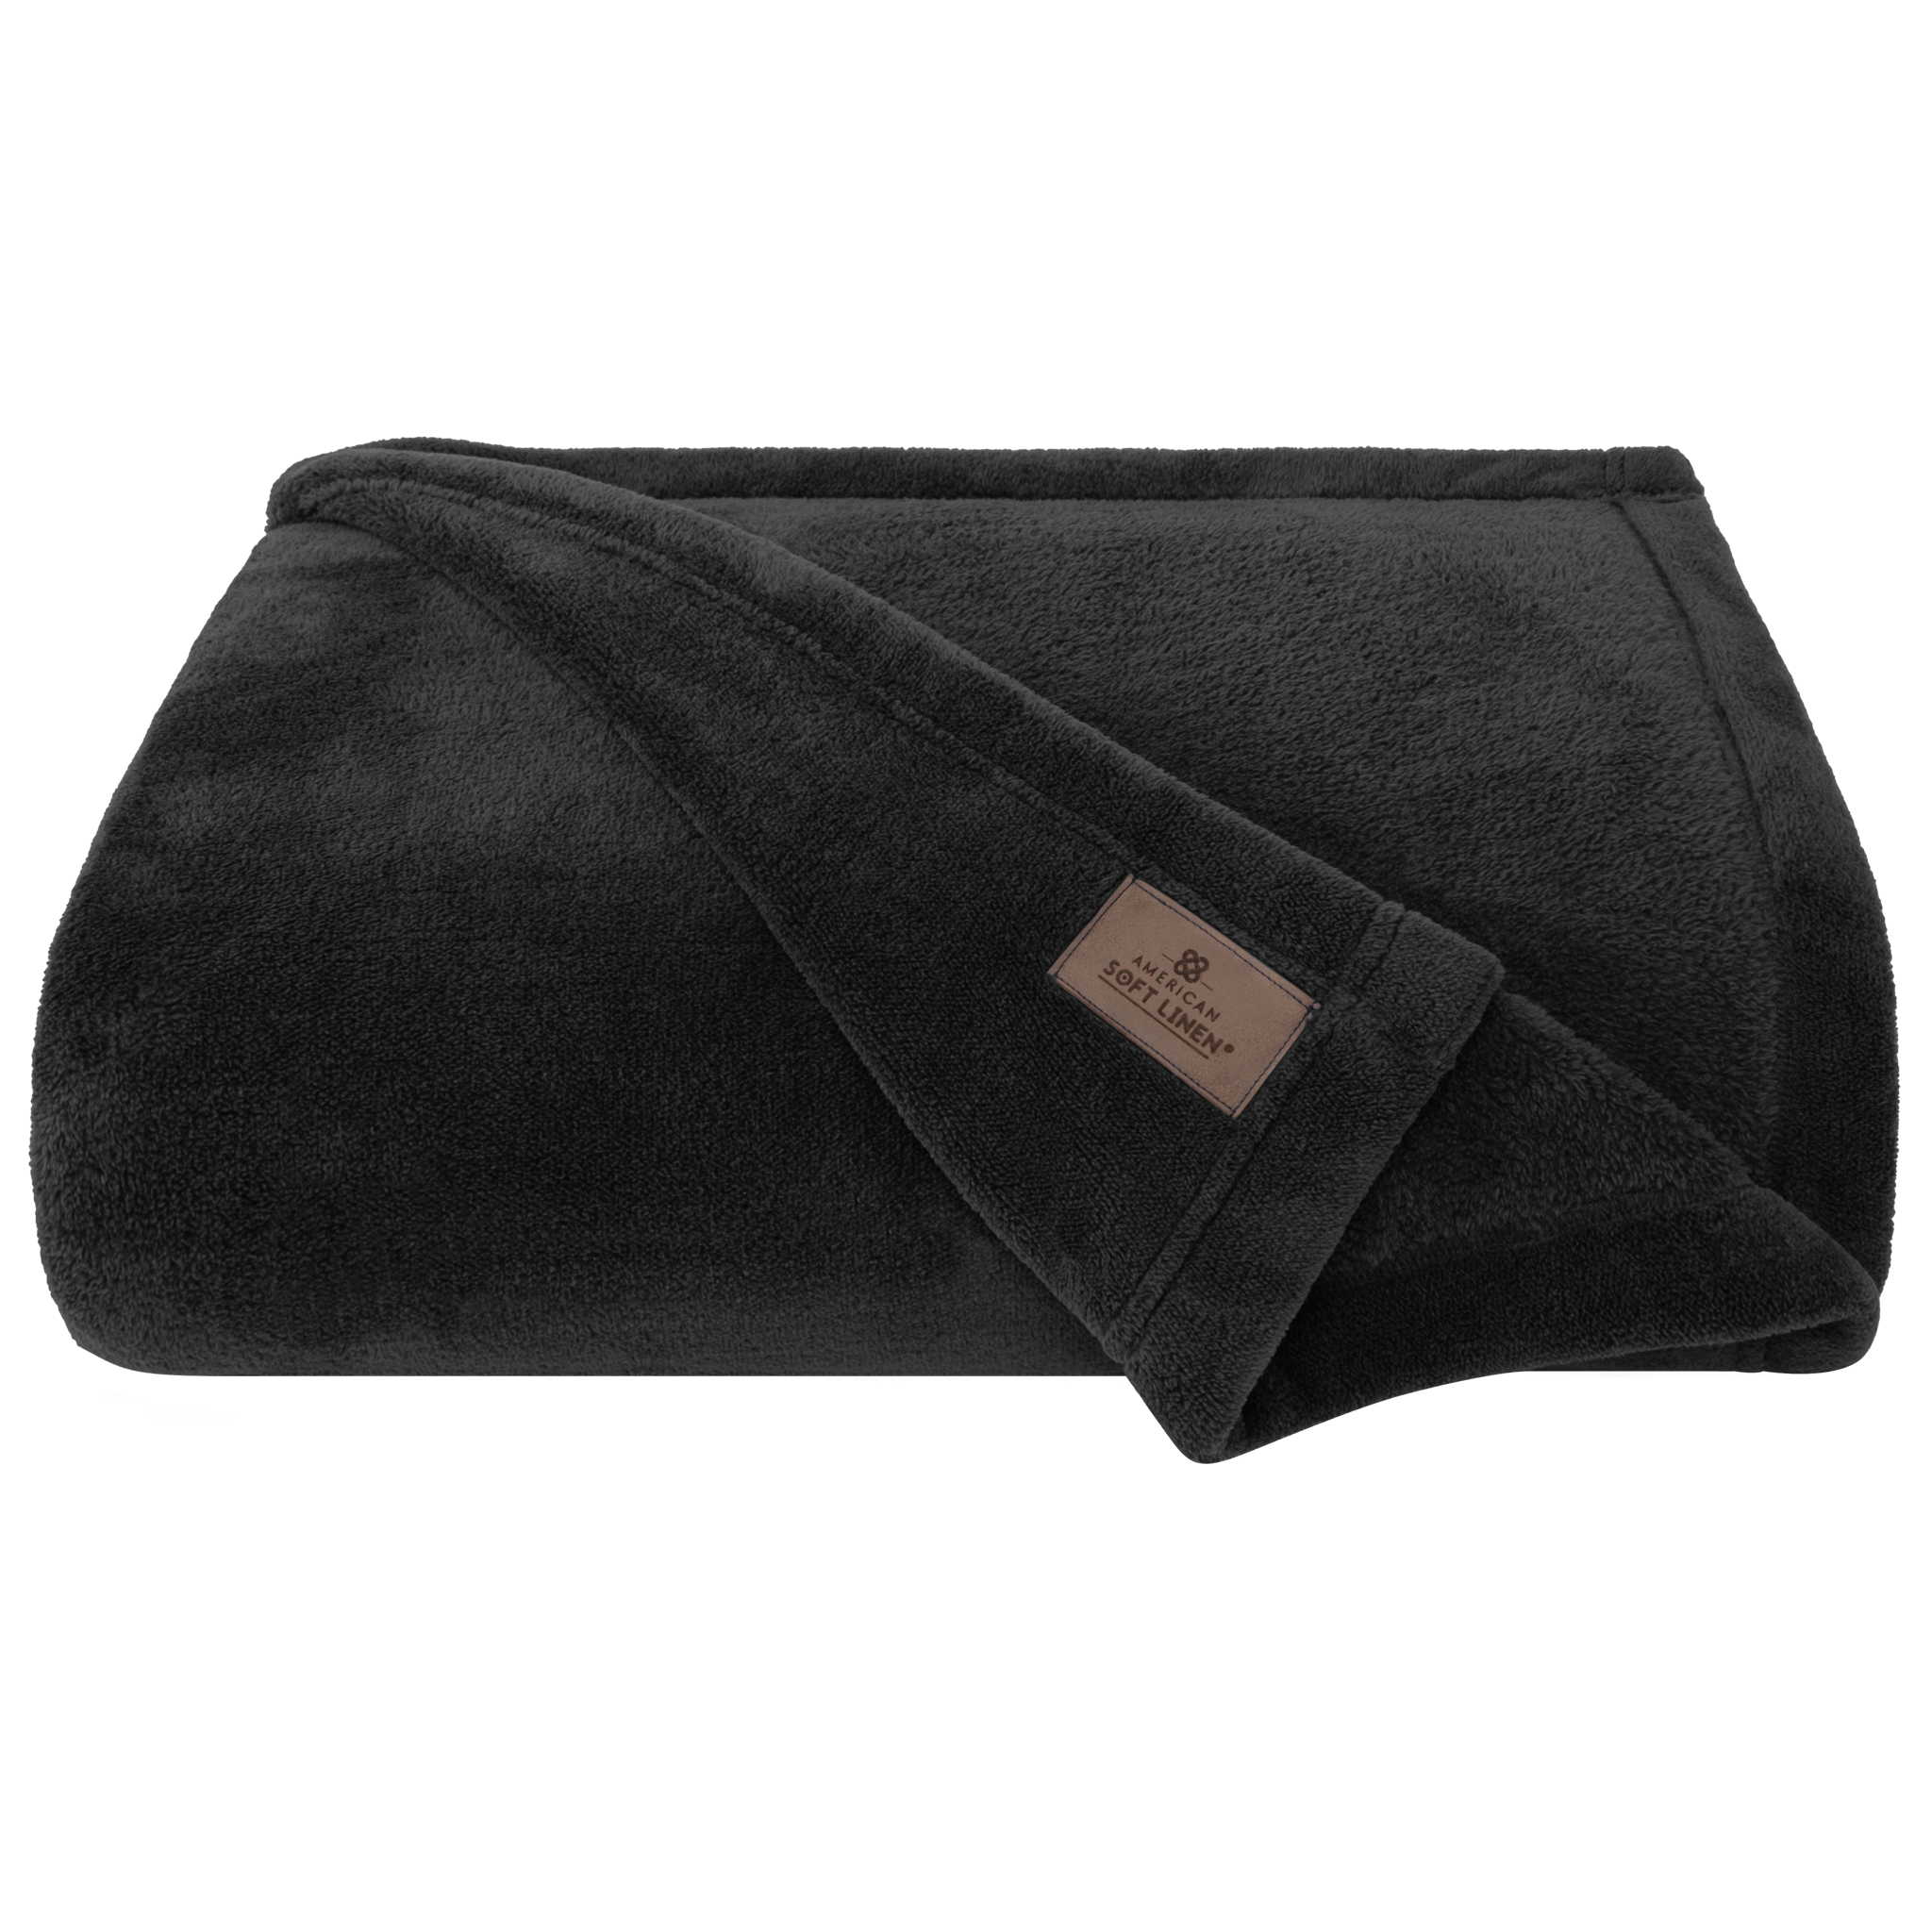 American Soft Linen - Bedding Fleece Blanket - Queen Size 85x90 inches - Black - 3